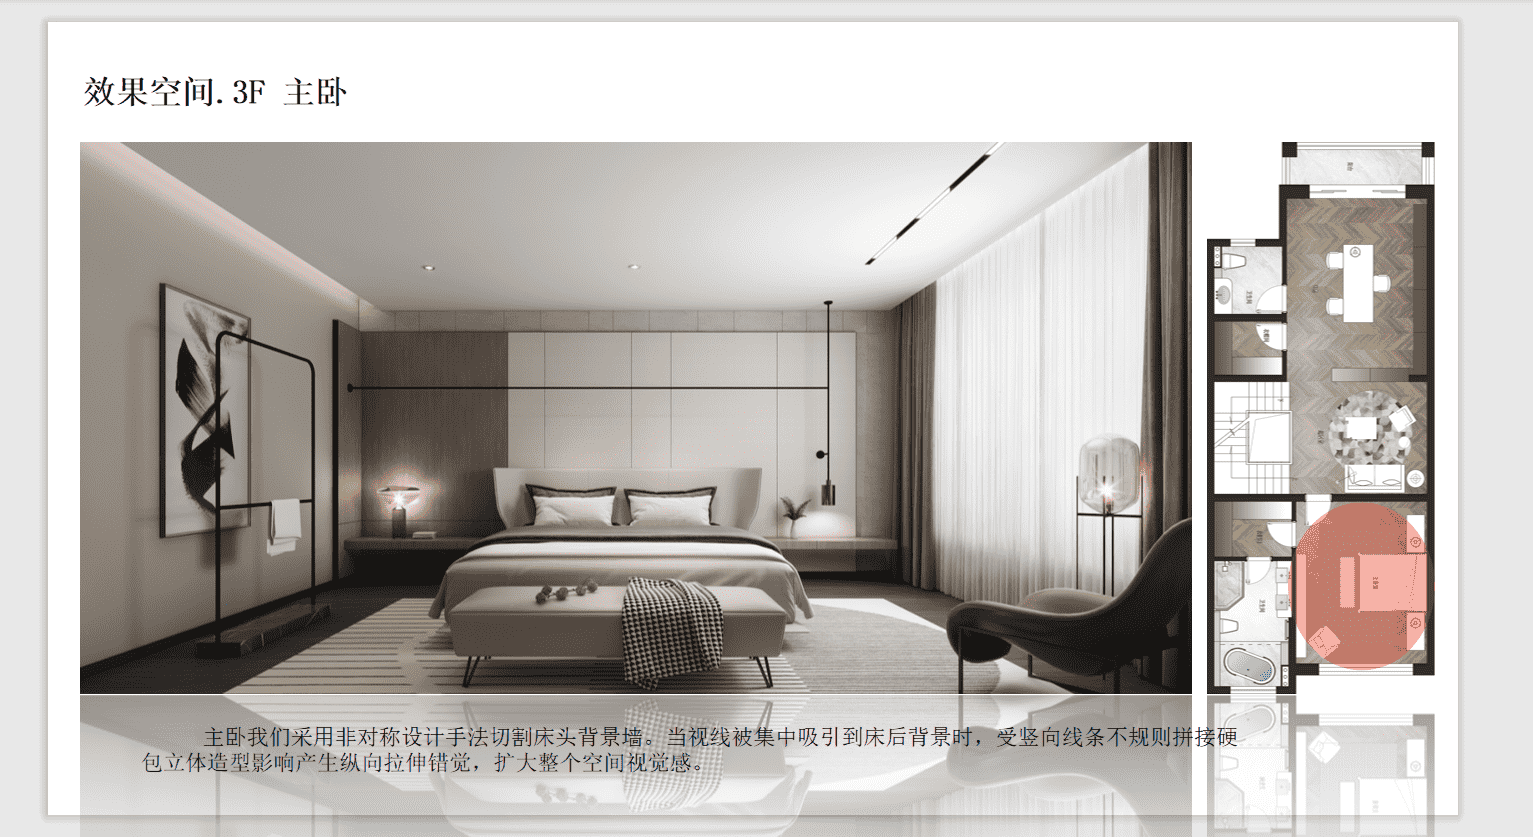 松江区合生广富汇500平现代简约风格别墅装修效果图